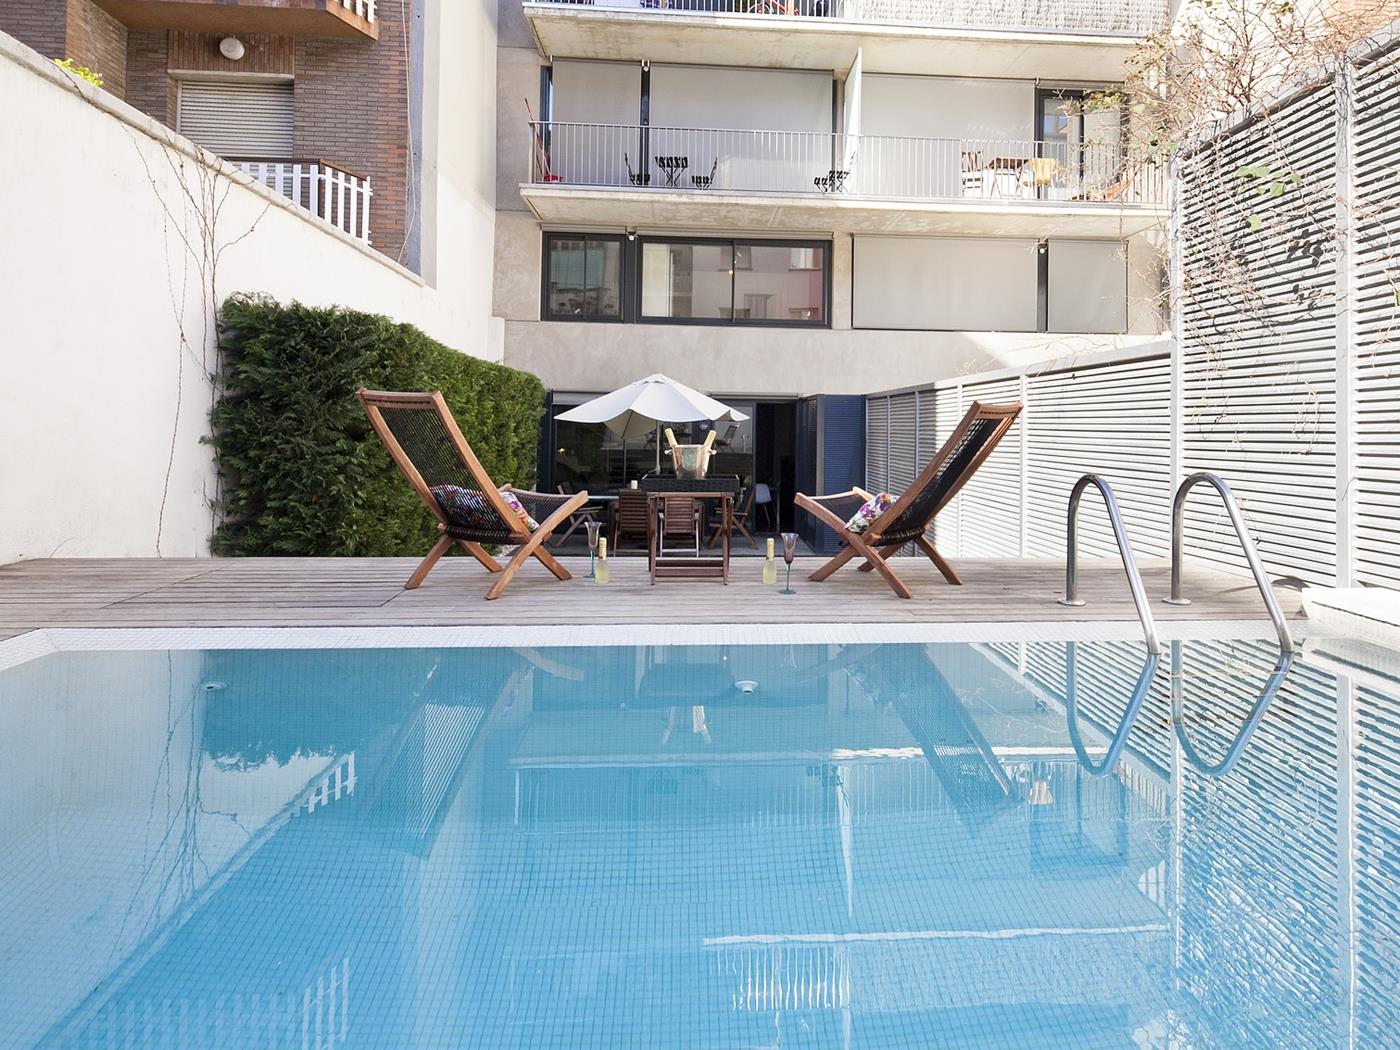 دوبلكس حديث بحديقة خاصة وحمام سباحة - My Space Barcelona شقة